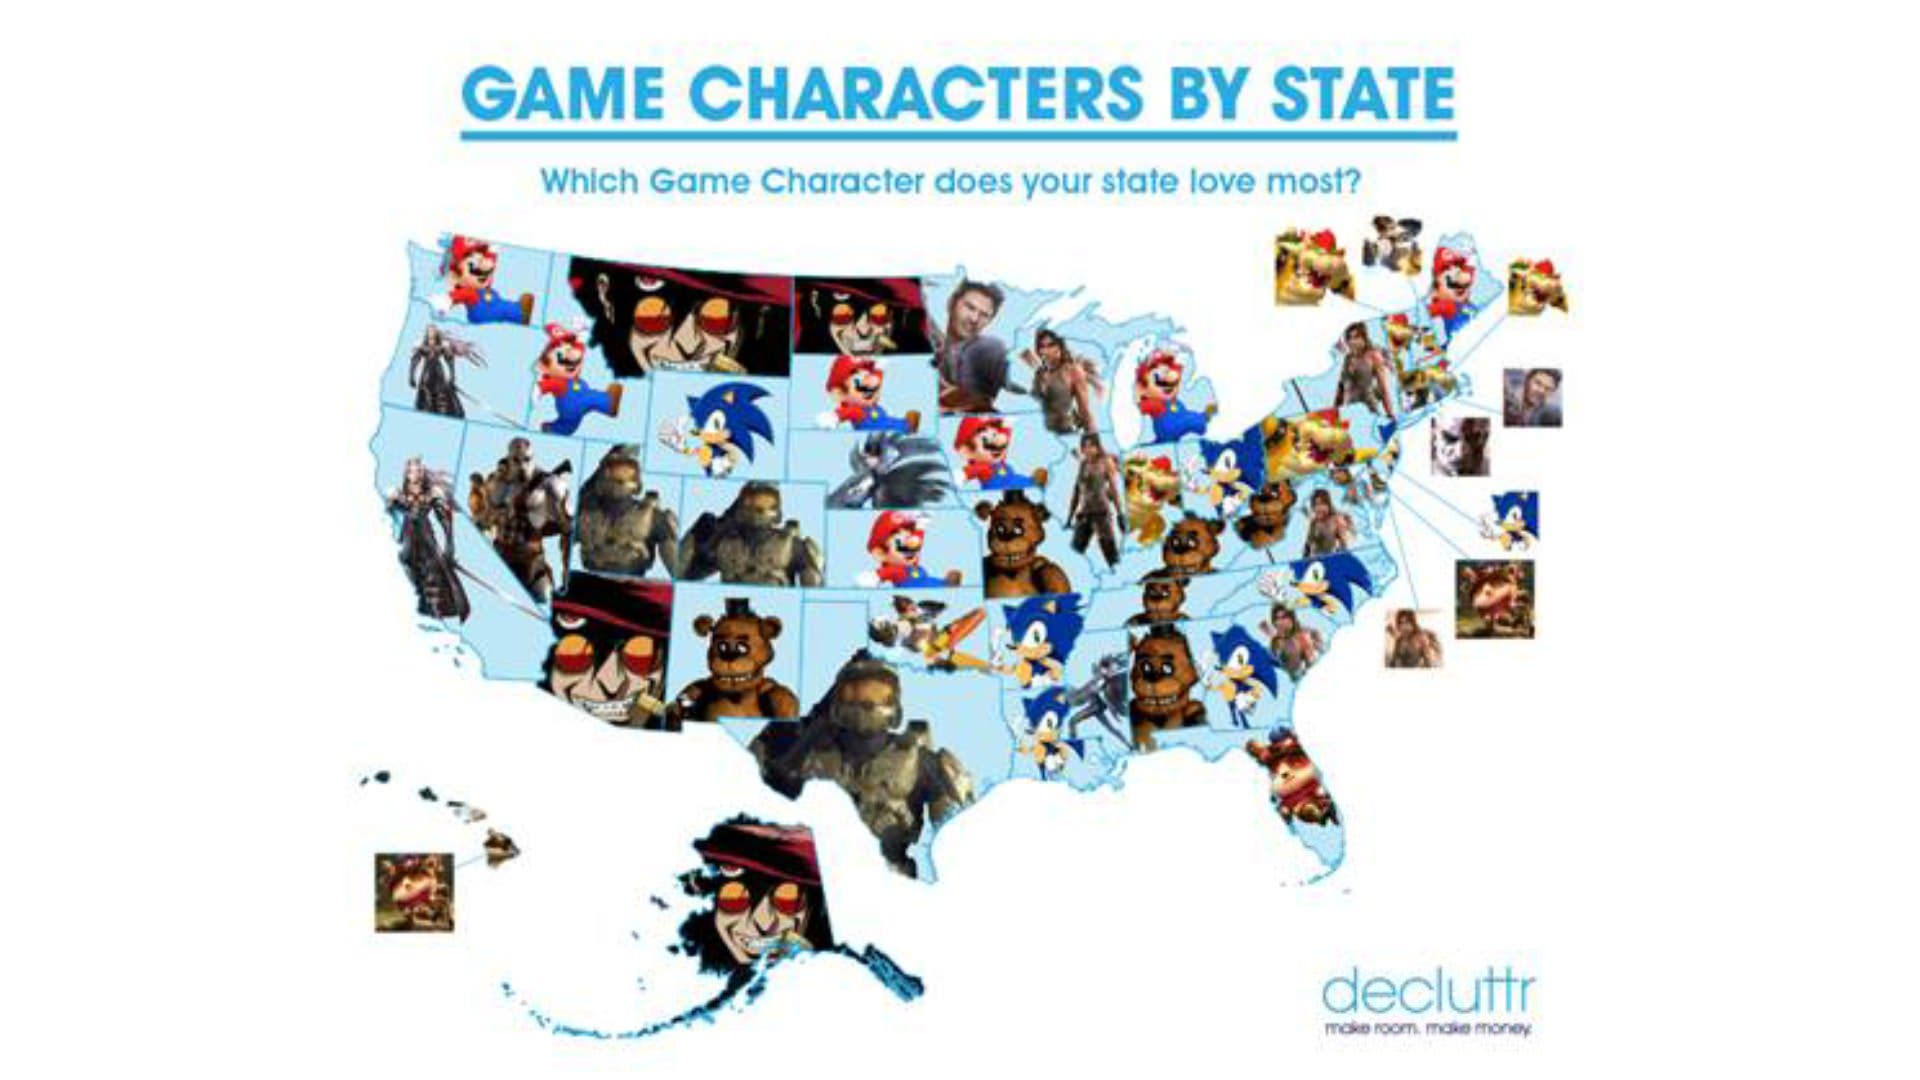 Estos son los personajes de videojuegos más buscados en cada uno de los estados de Estados Unidos